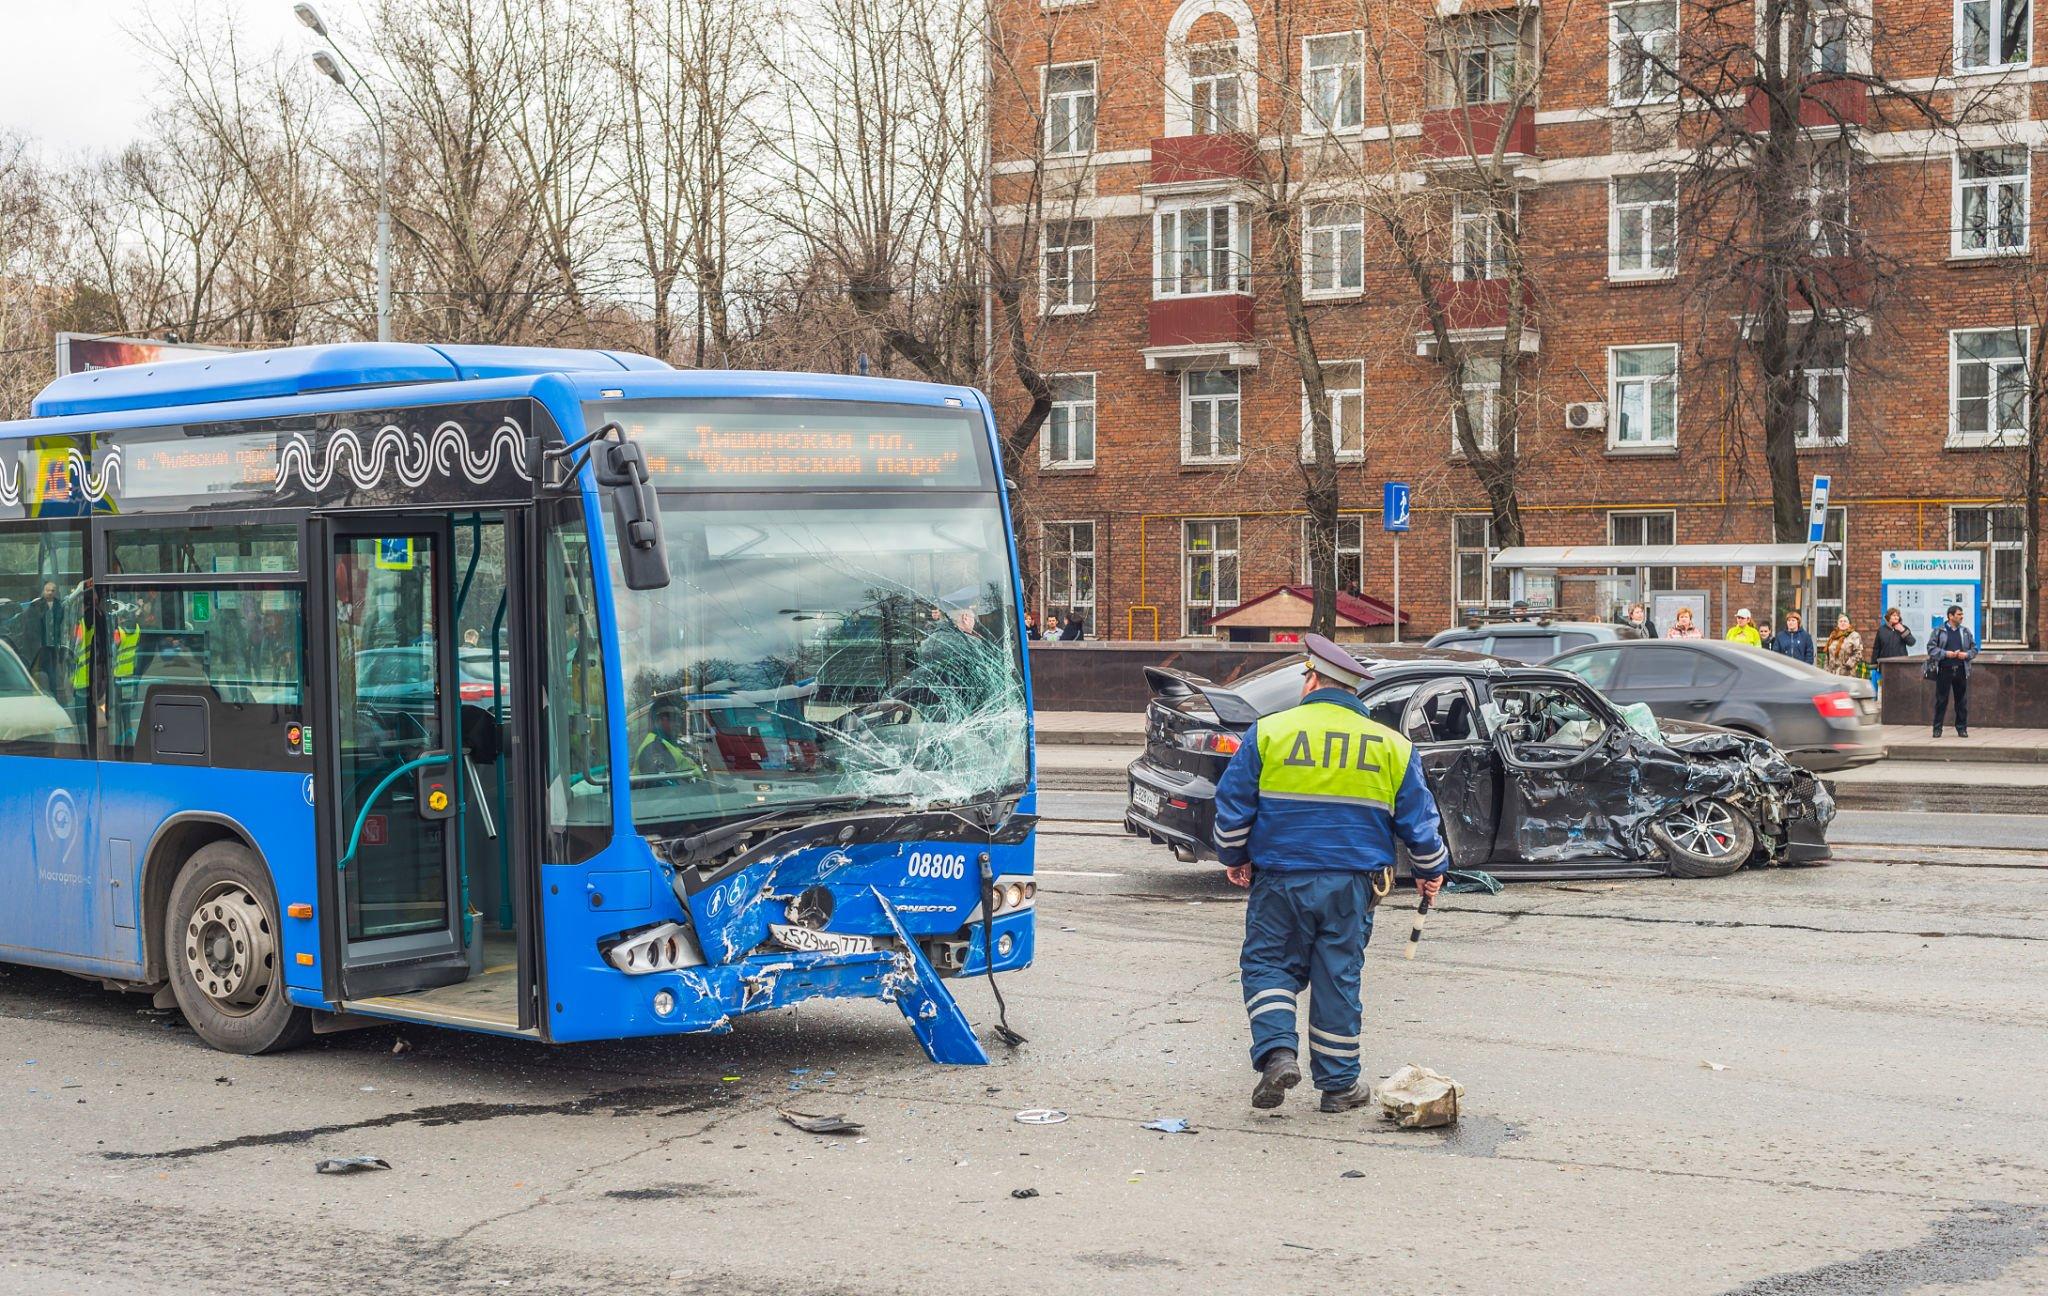 Bus accident 